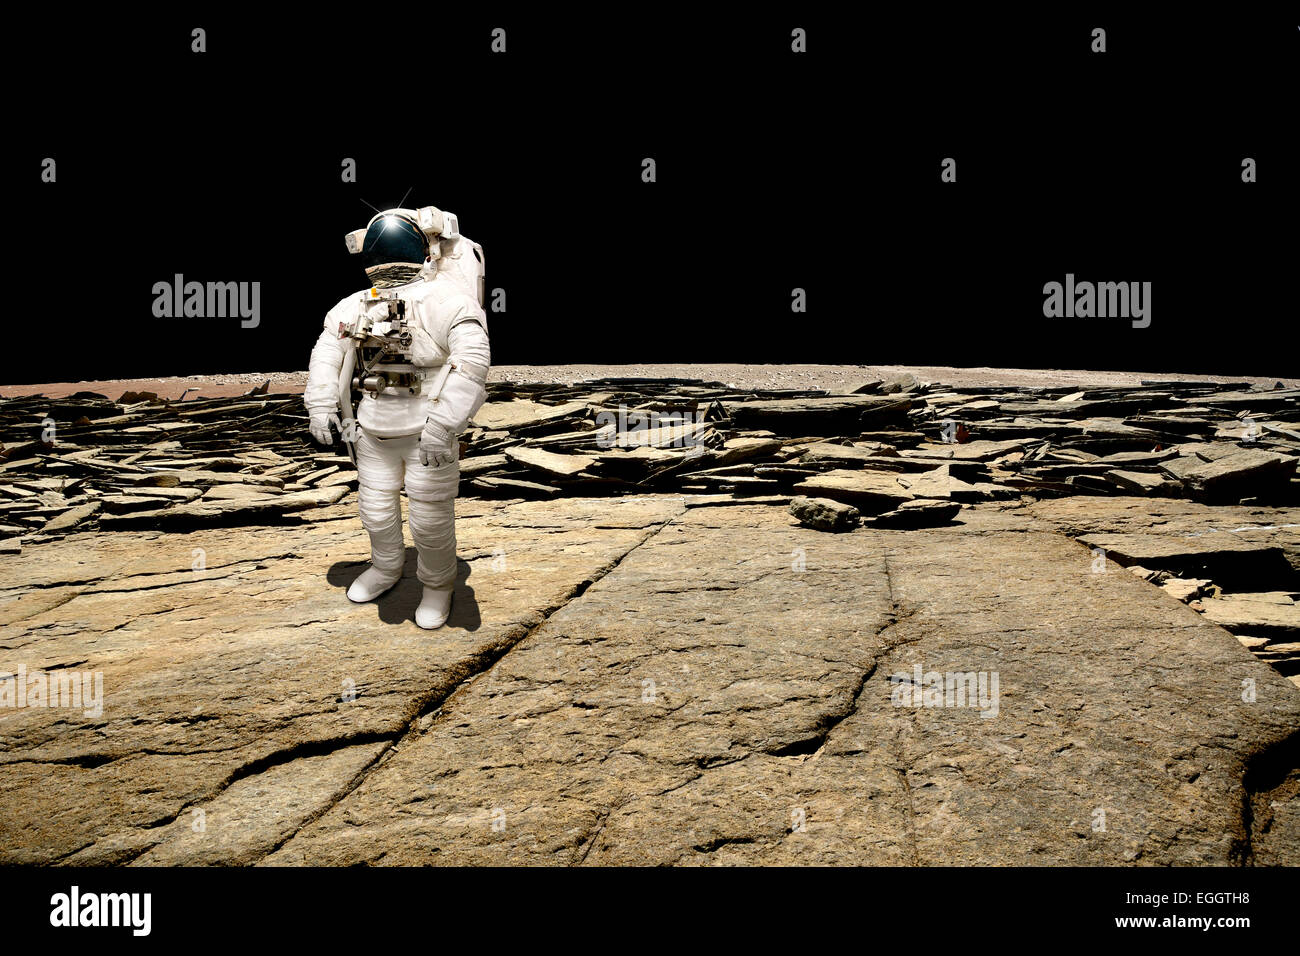 Ein Astronaut einen Überblick über seine Situation nach wird auf einem kargen Planeten gestrandet. Die Schwärze des Weltraums ist der Hintergrund. Stockfoto